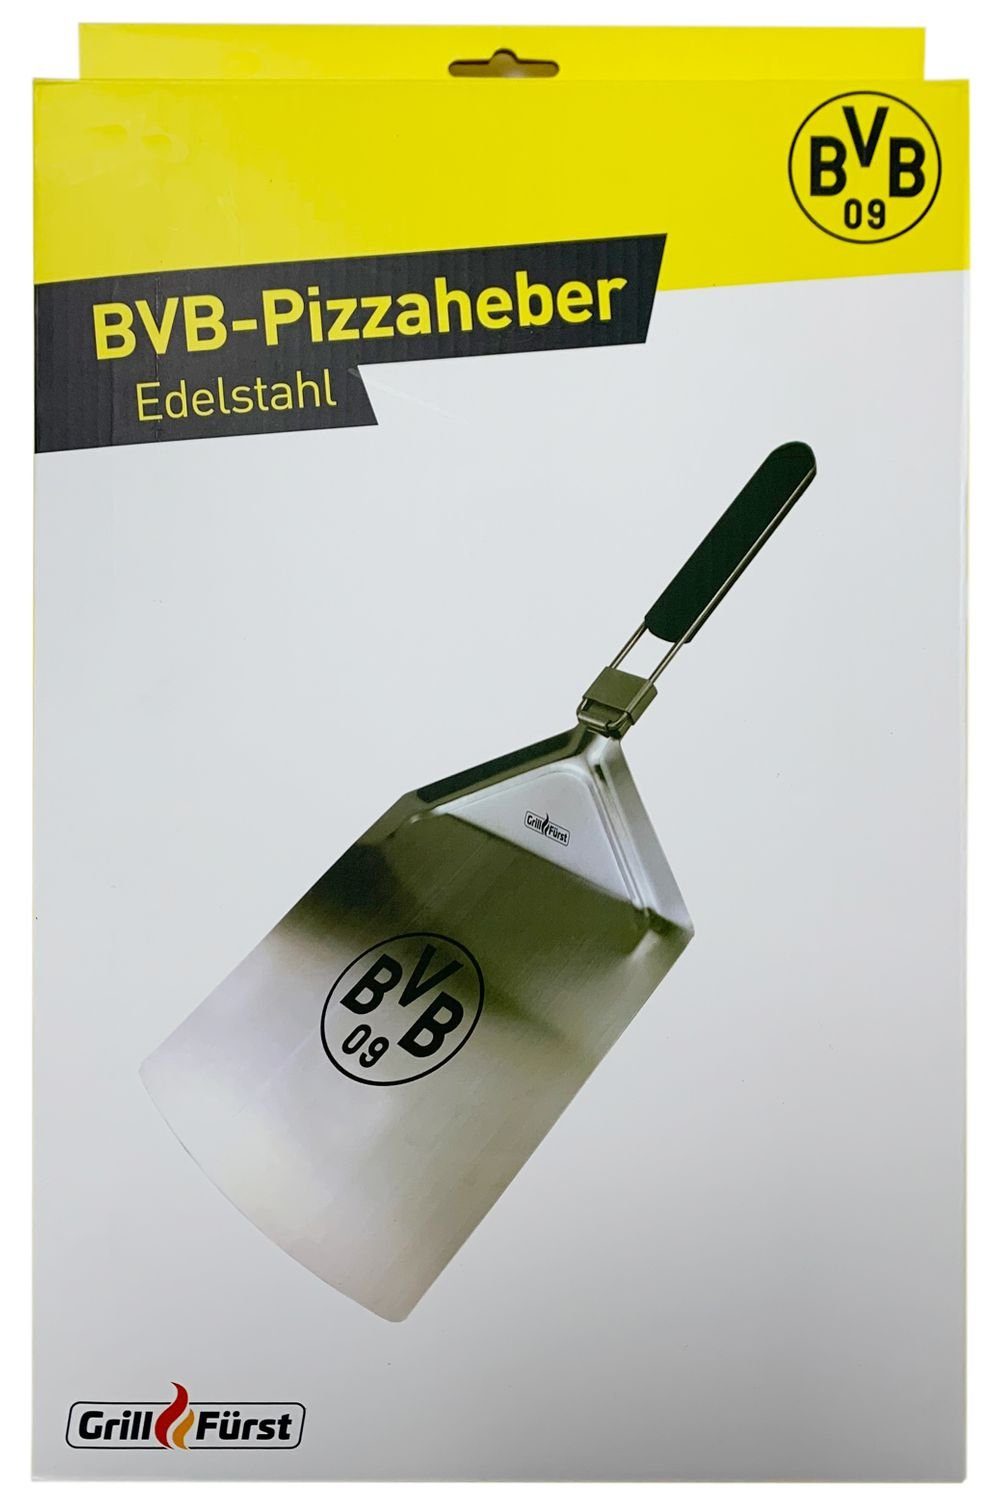 Grillfürst Pizzaschieber Grillfürst Borussia Dortmund Edition - Pizzaheber Pizzaschieber Edelstahl klappbar 